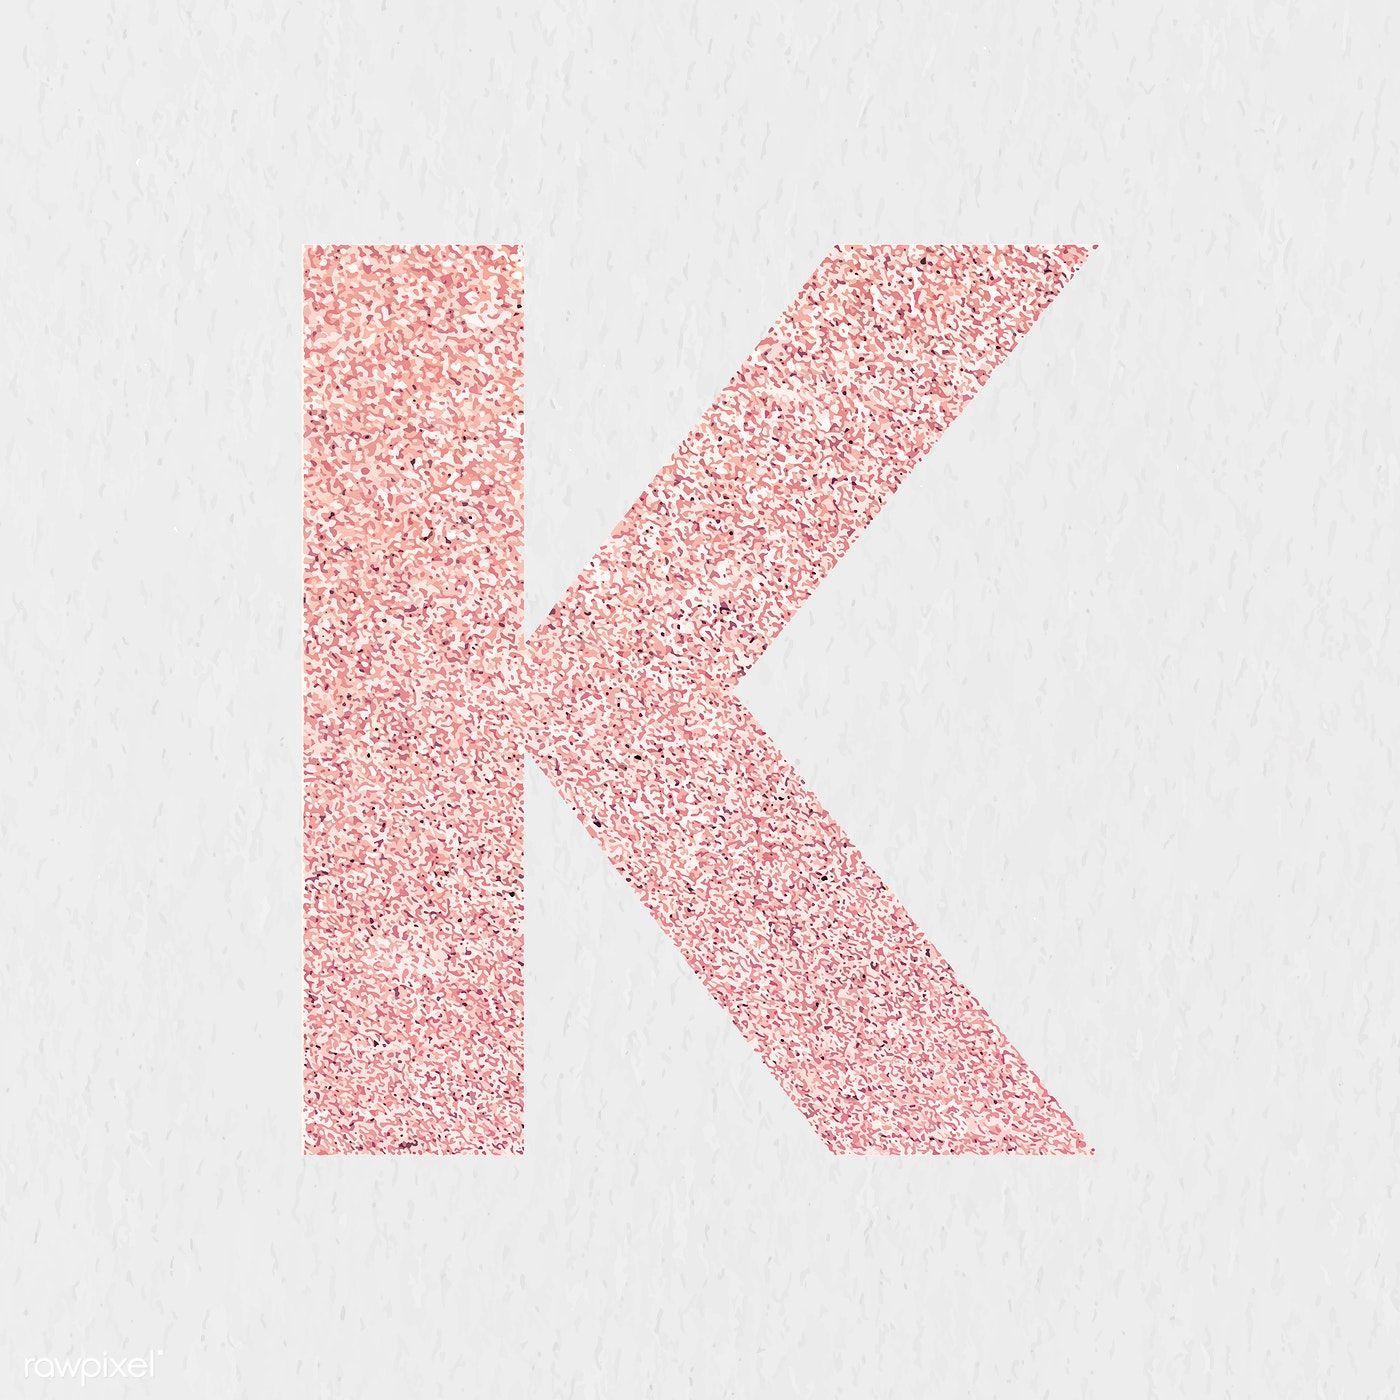 Glitter capital letter K sticker vector. free image / NingZk V. Alphabet wallpaper, Letter k, iPhone wallpaper glitter